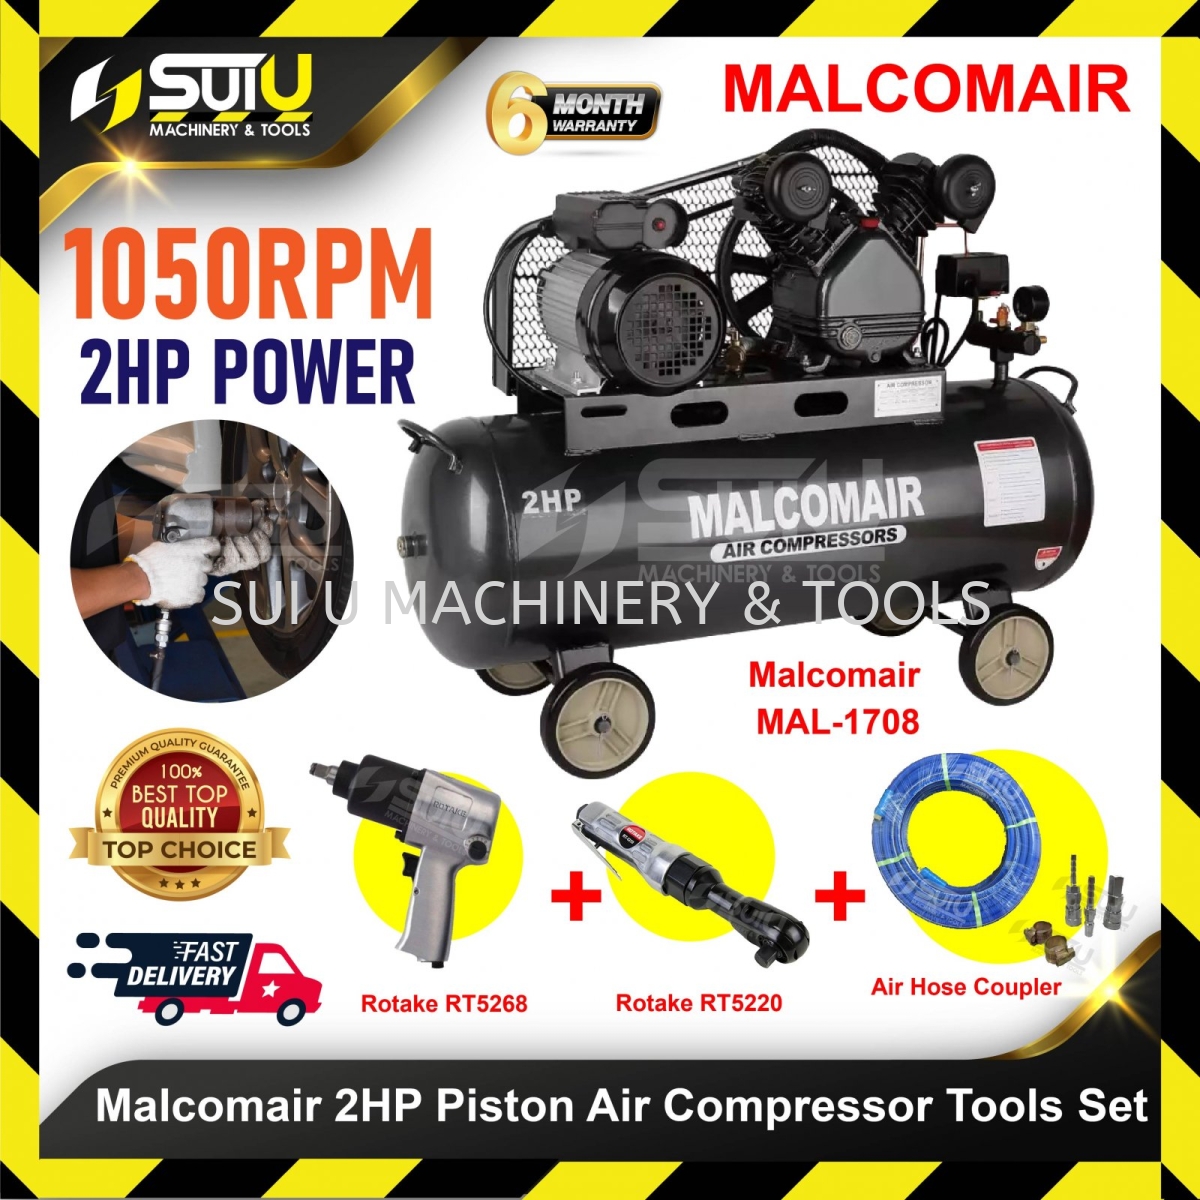 MALCOMAIR MAL1708 2HP 100L Air Compressor + Air Hose Coupler + ROTAKE  RT5220 + RT5268 Piston